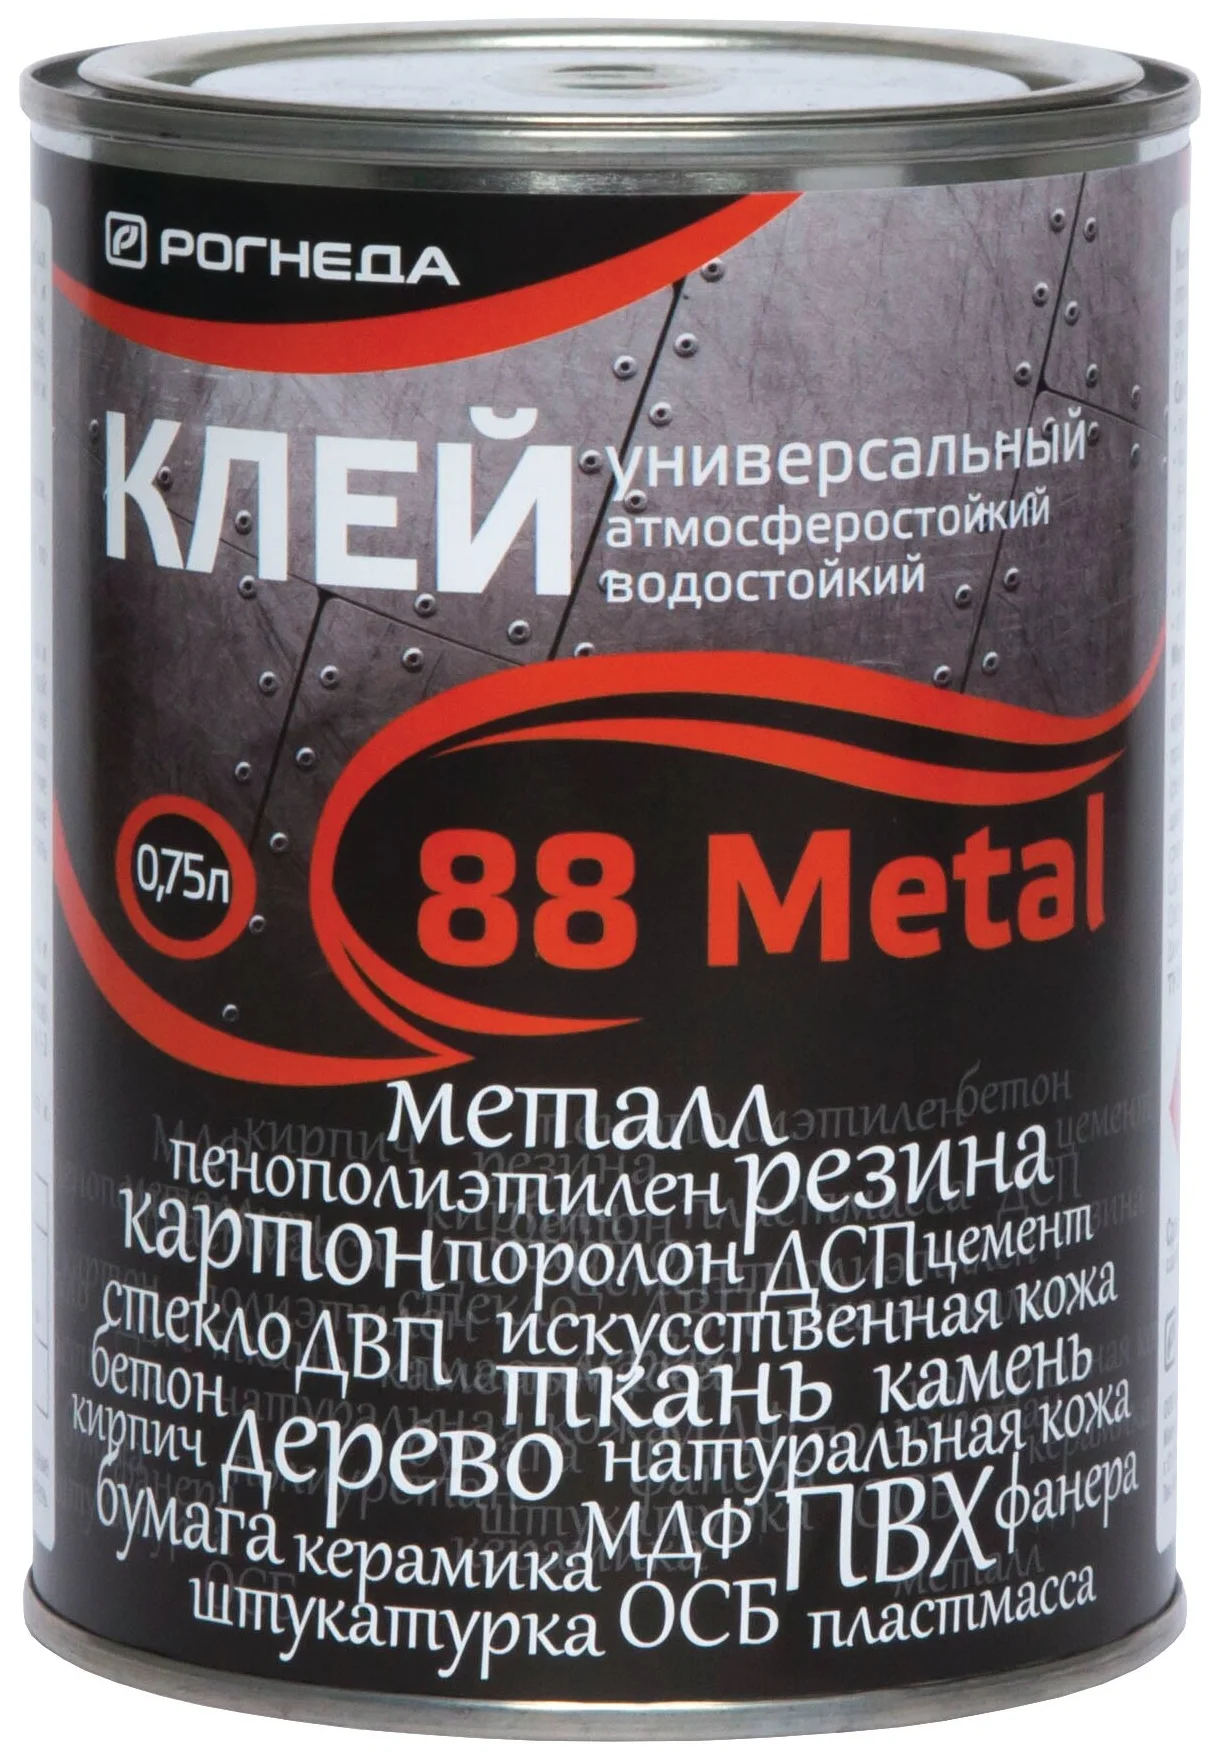 Клей 88-Metal 0,75л